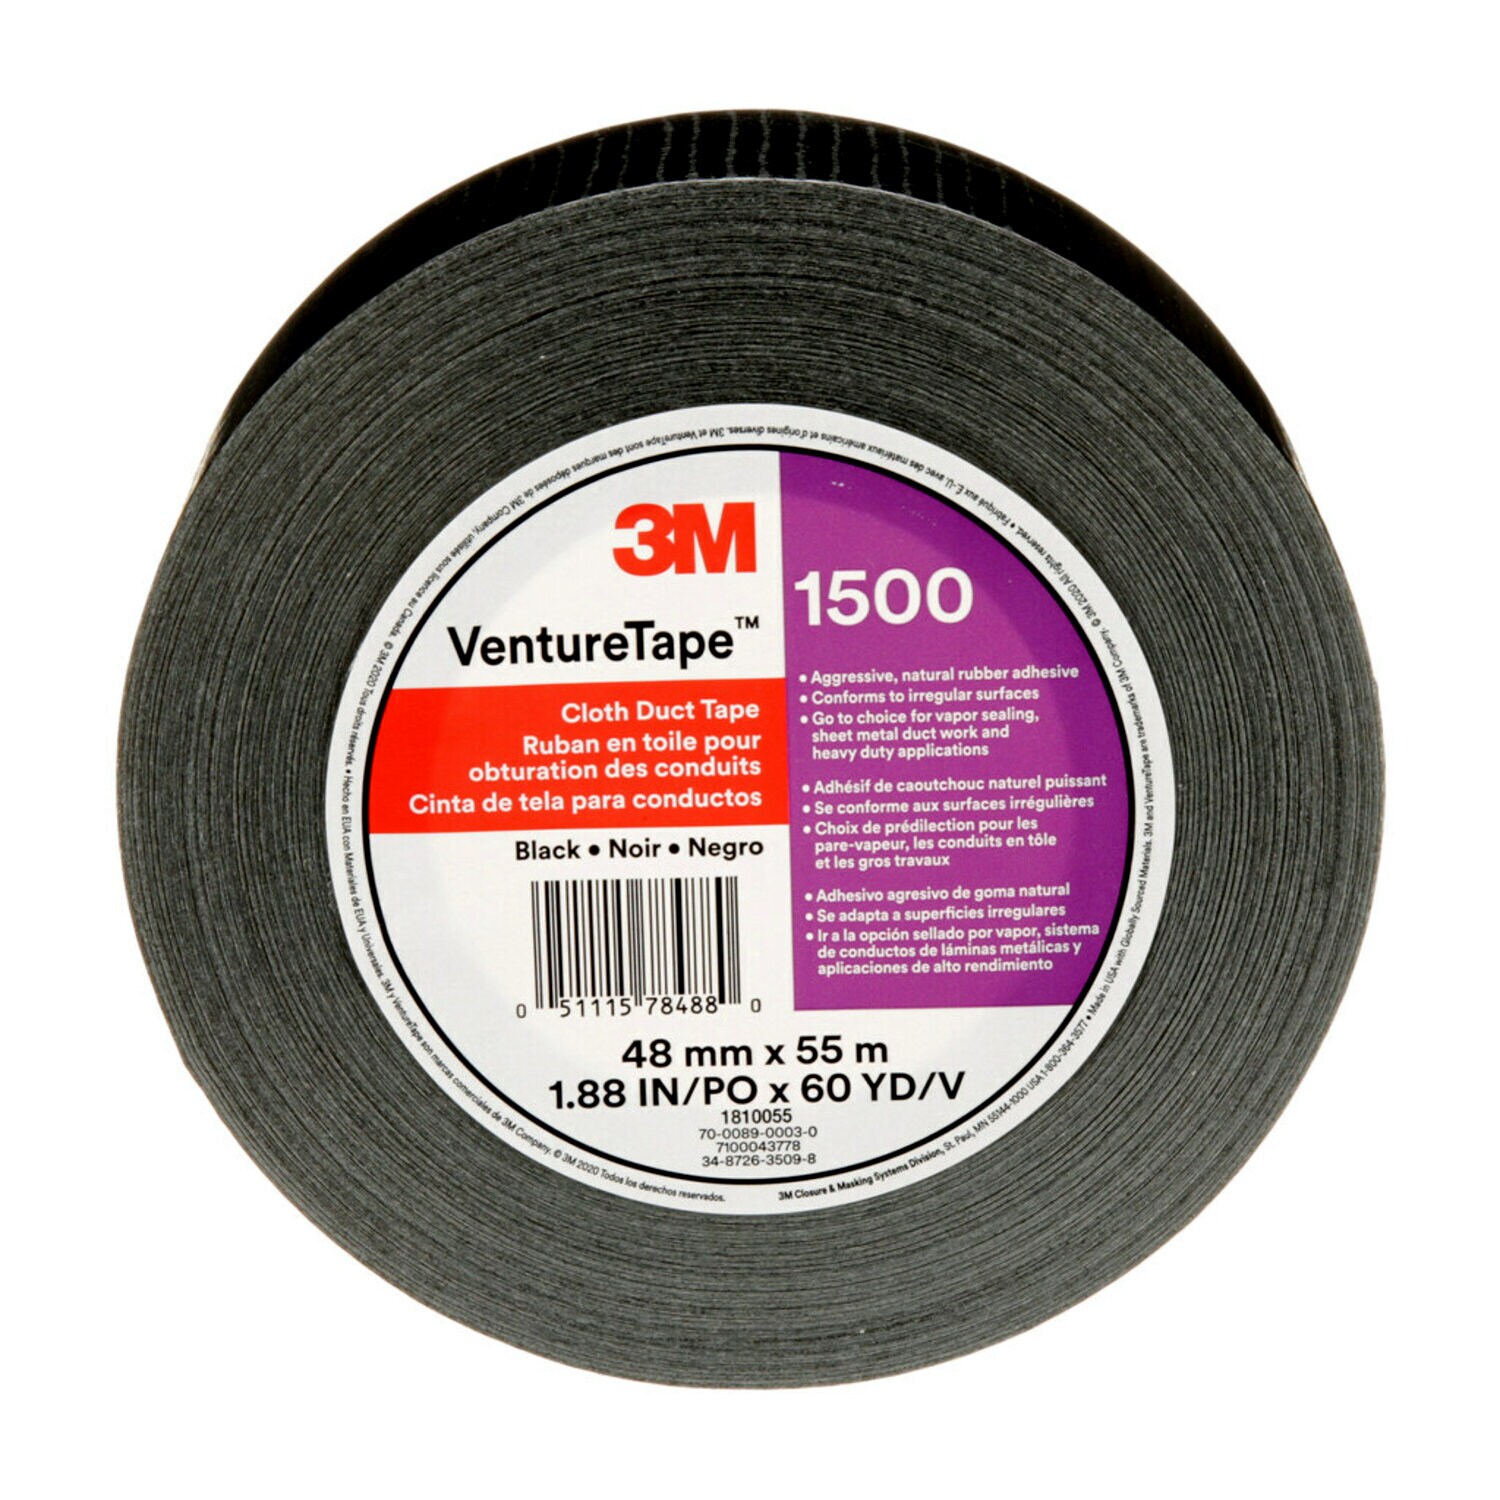 7100043778 - 3M Venture Tape Cloth Duct Tape 1500, Black, 48 mm x 55 m (1.88 in x
60.1 yd), 24/Case